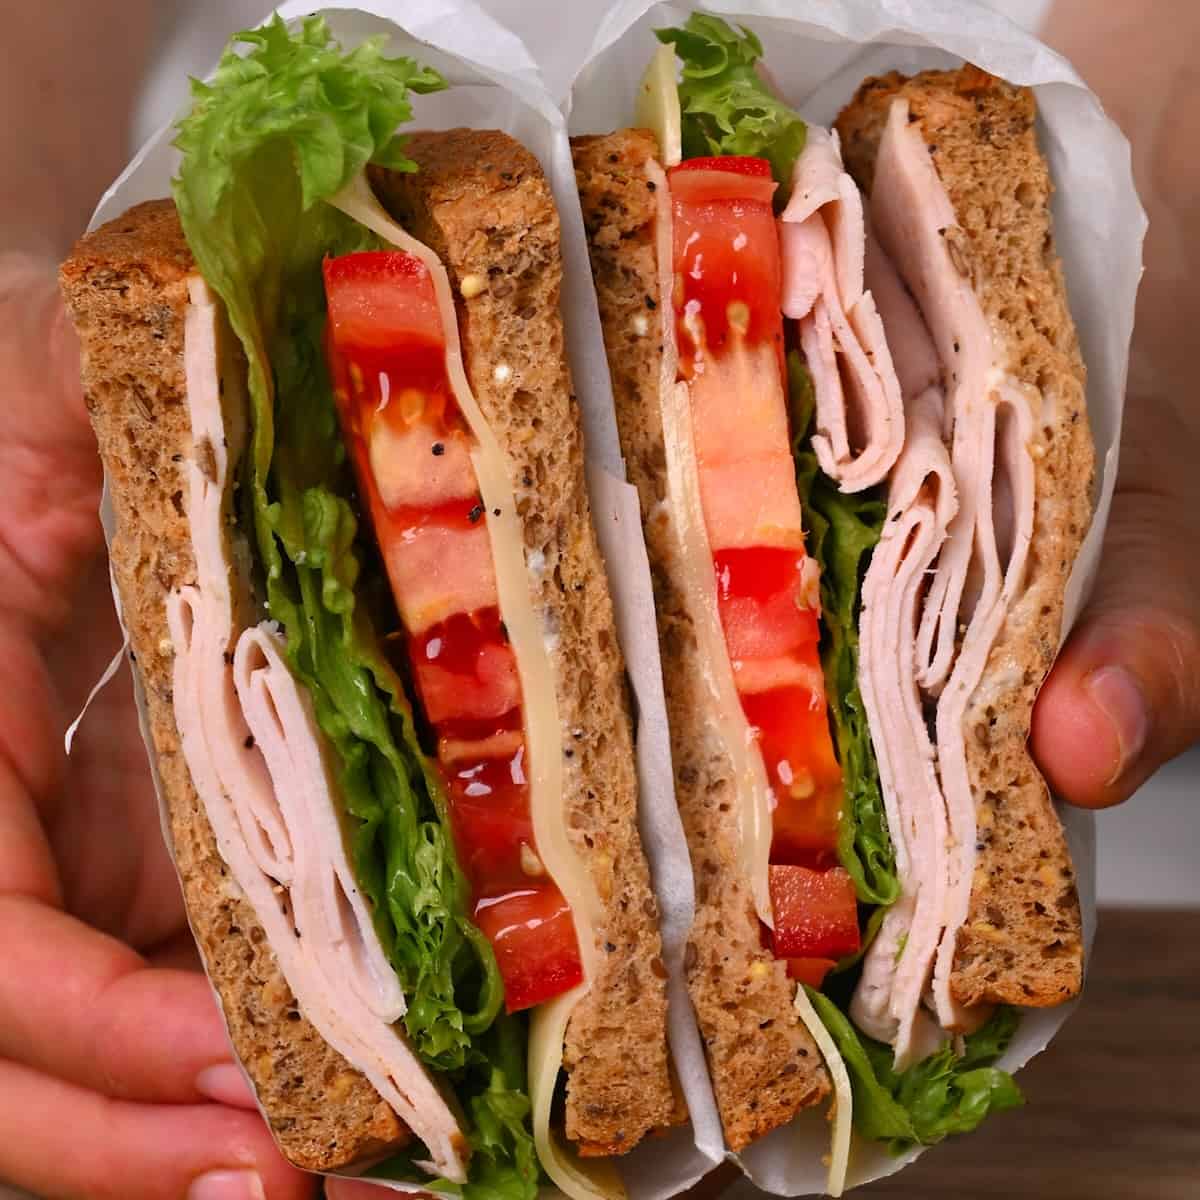 Turkey sandwich cut in two